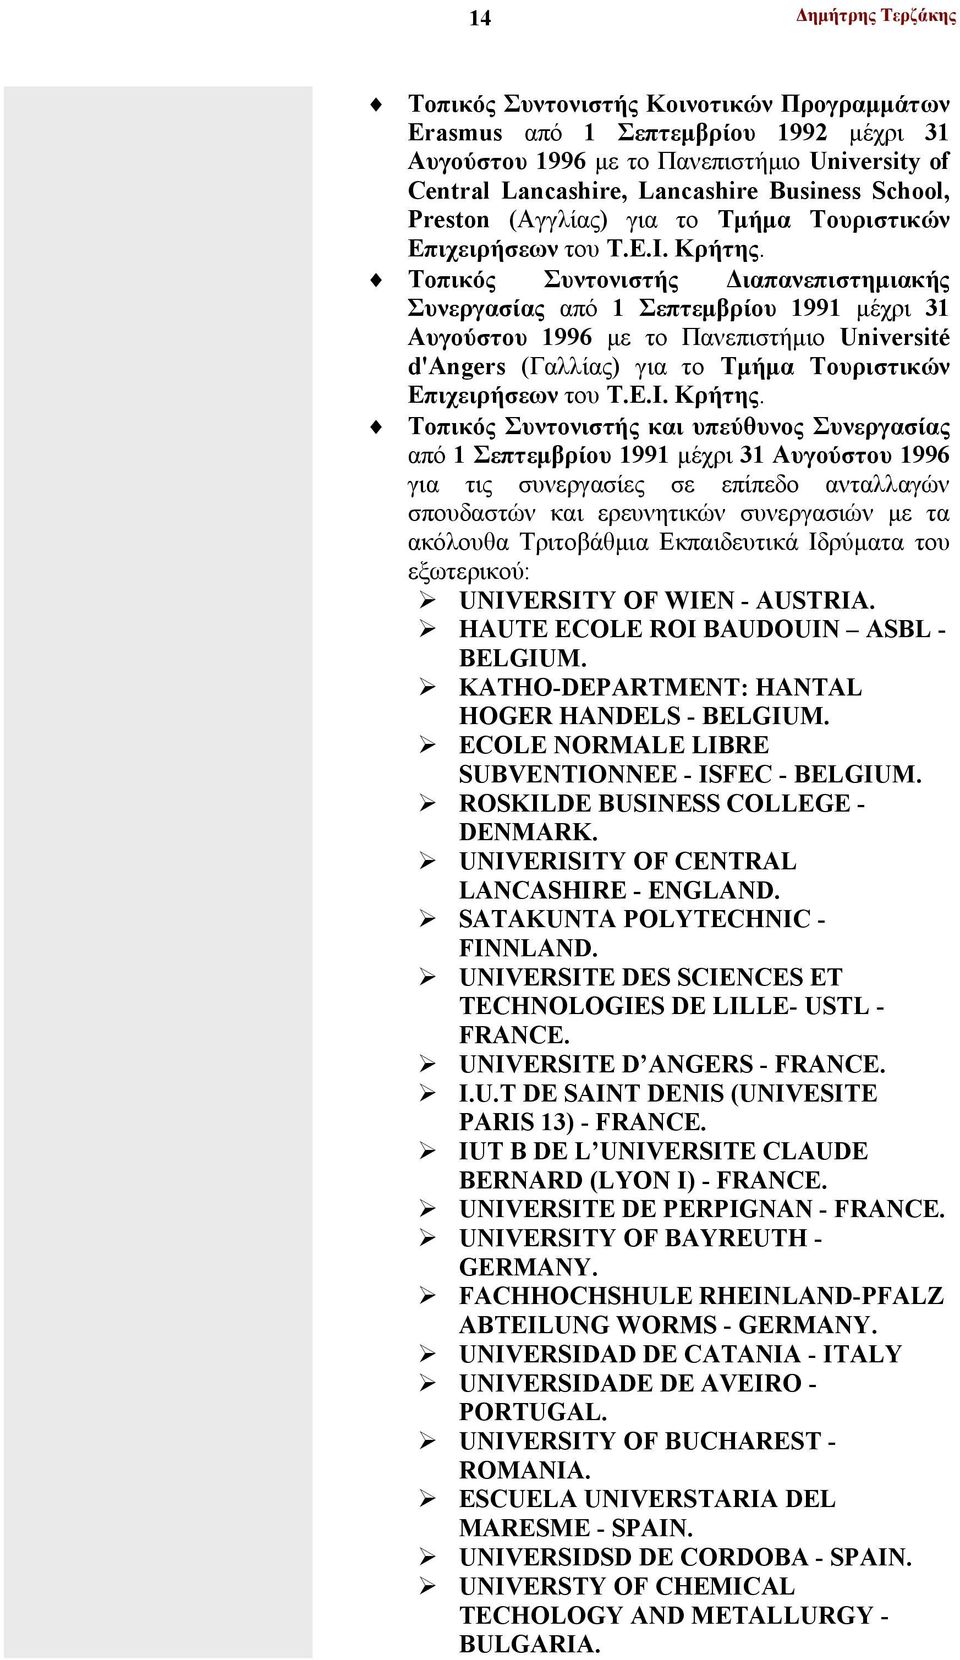 Τοπικός Συντονιστής Διαπανεπιστημιακής Συνεργασίας από 1 Σεπτεμβρίου 1991 μέχρι 31 Αυγούστου 1996 με το Πανεπιστήμιο Université d'angers (Γαλλίας) για το Τμήμα Τουριστικών Επιχειρήσεων του Τ.Ε.Ι.